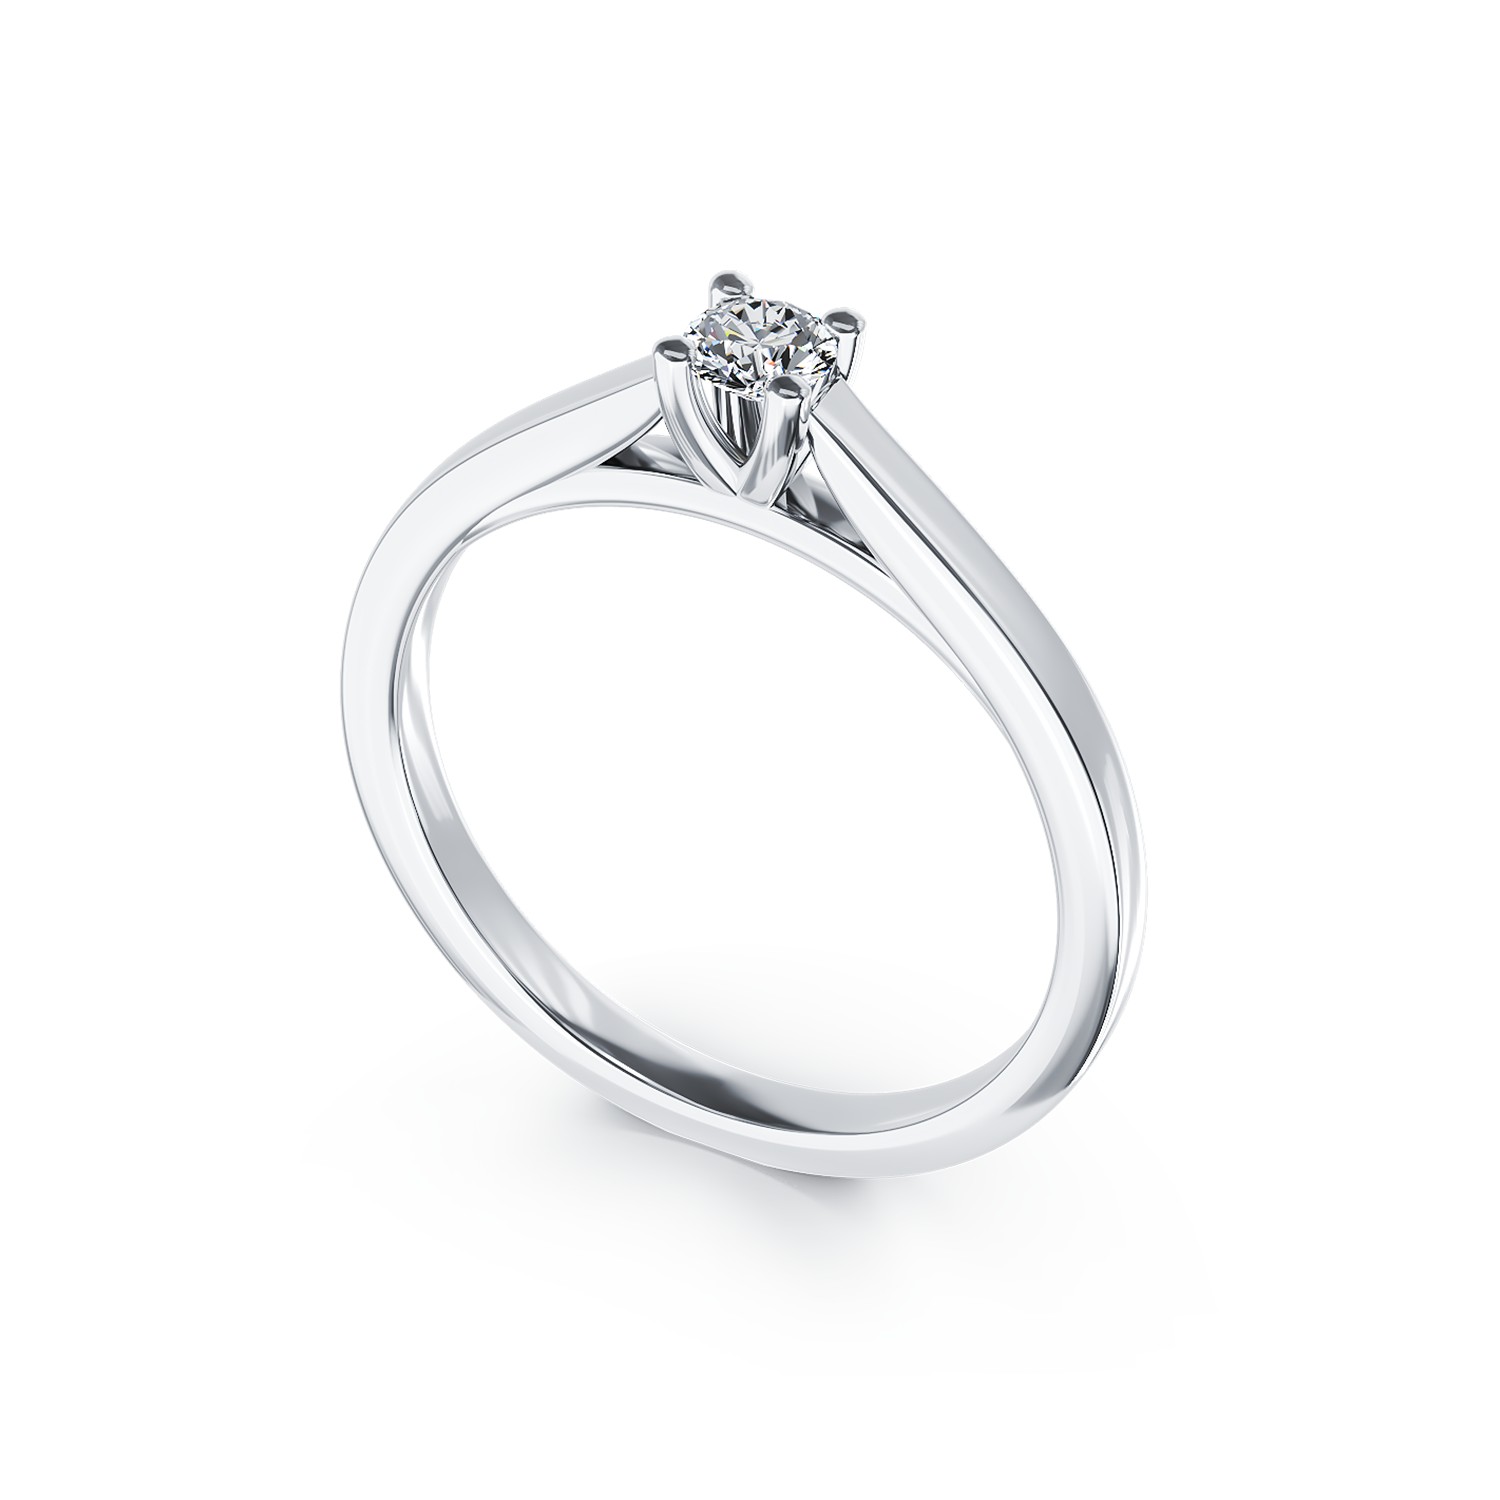 Inel de logodna din aur alb de 18K cu un diamant solitaire de 0.14ct